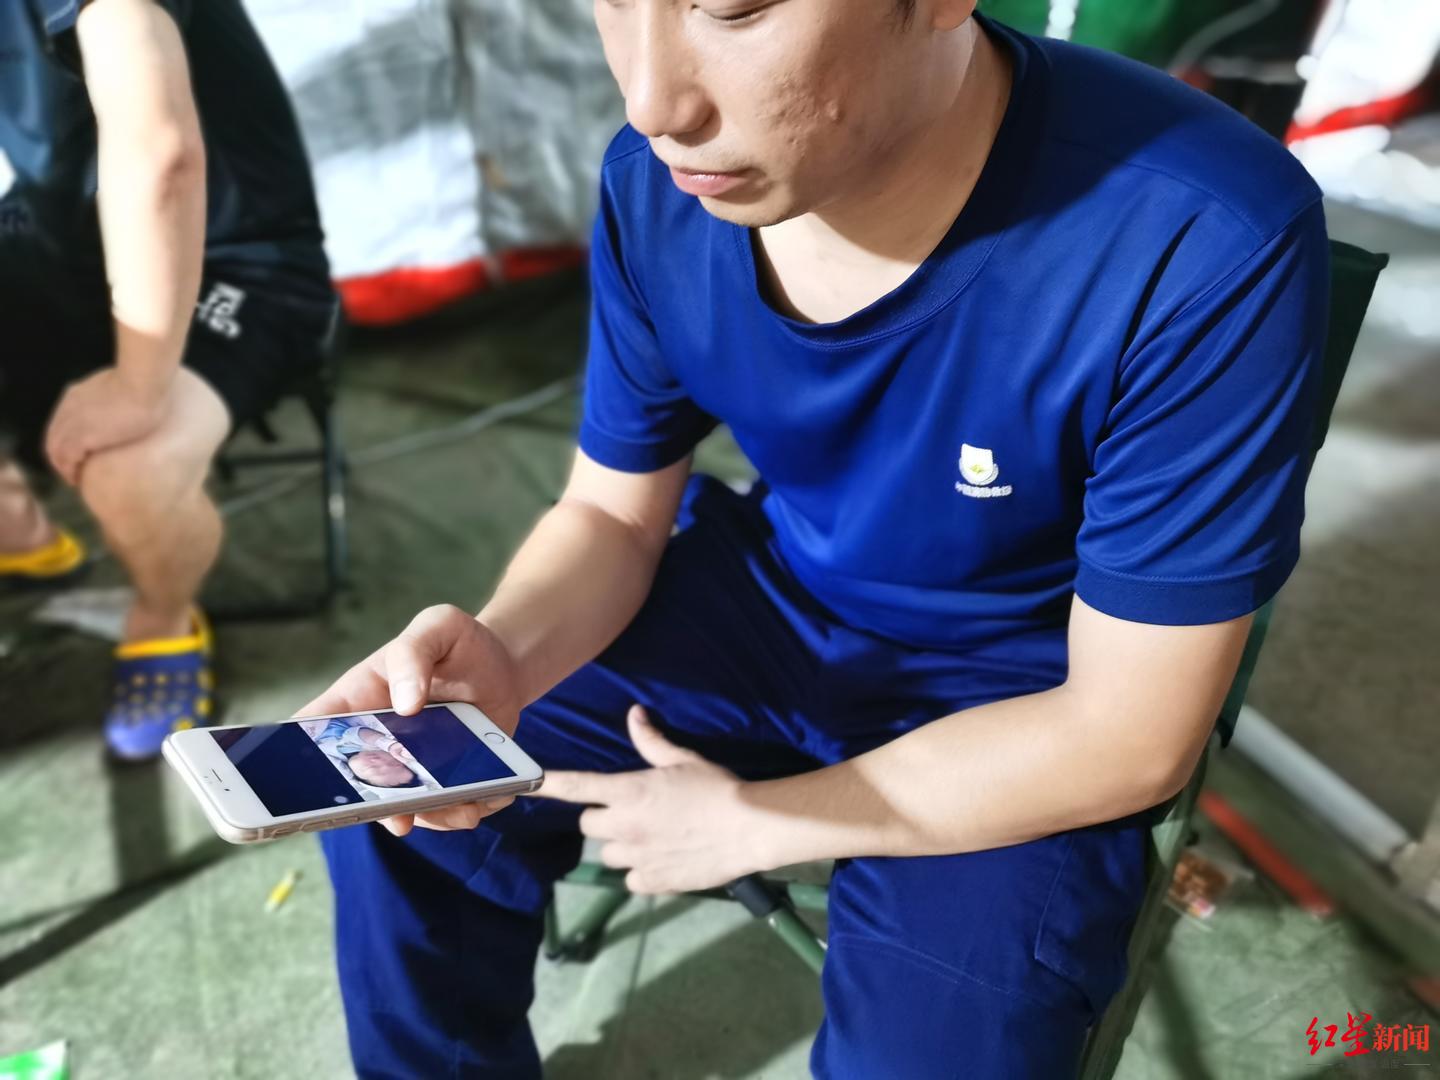 刘洪斌在看手机里女儿的照片